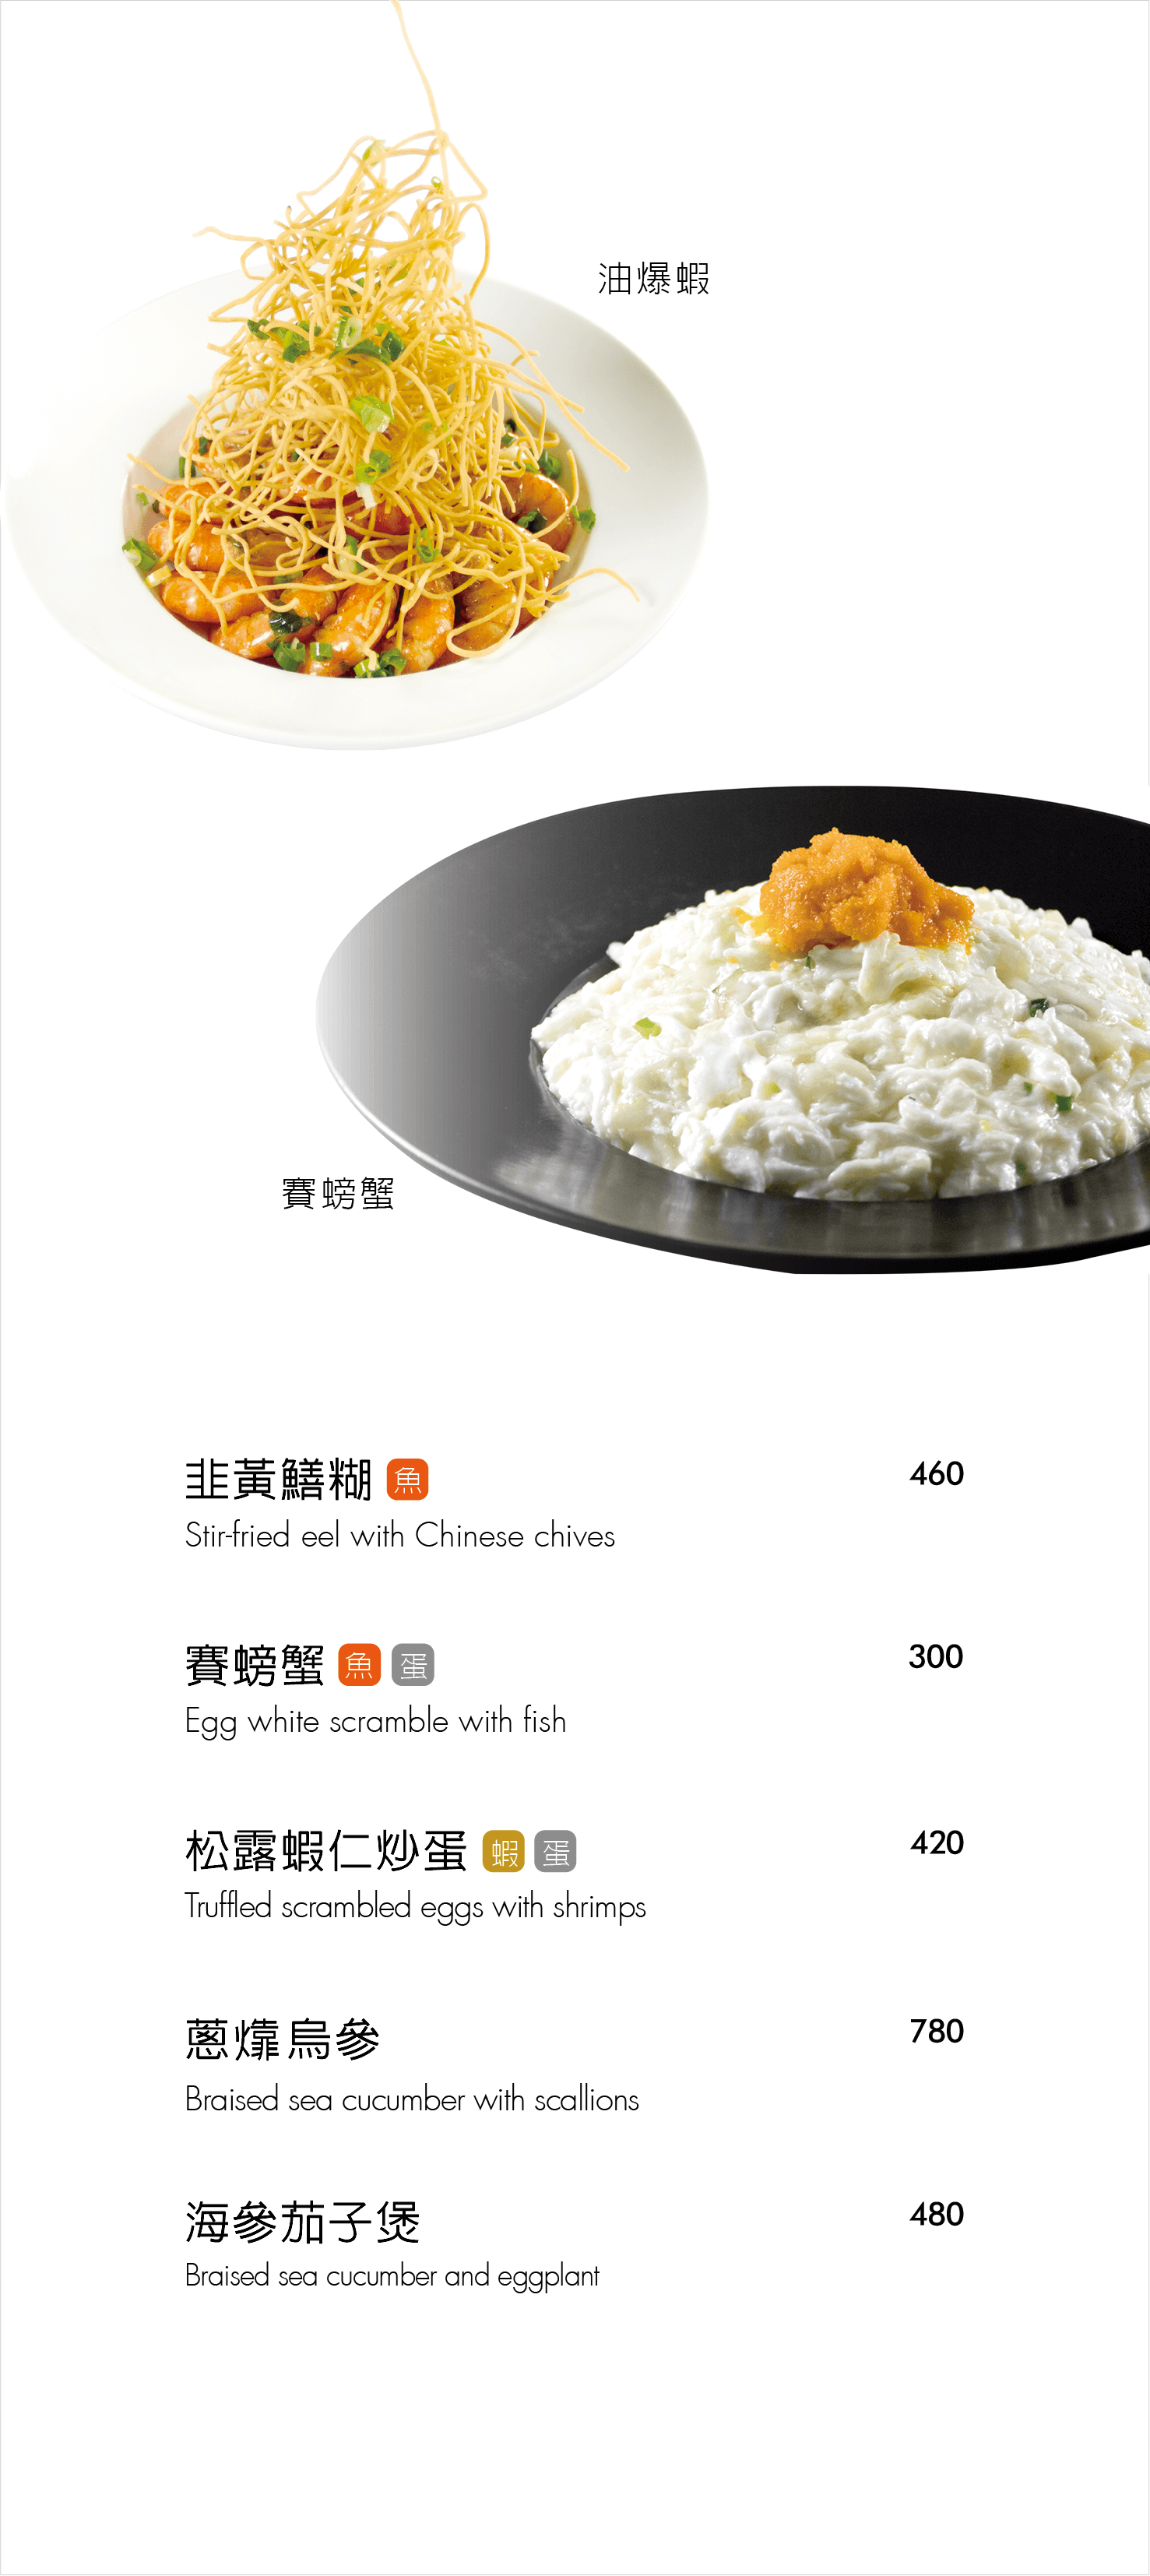 紅豆食府菜單MENU